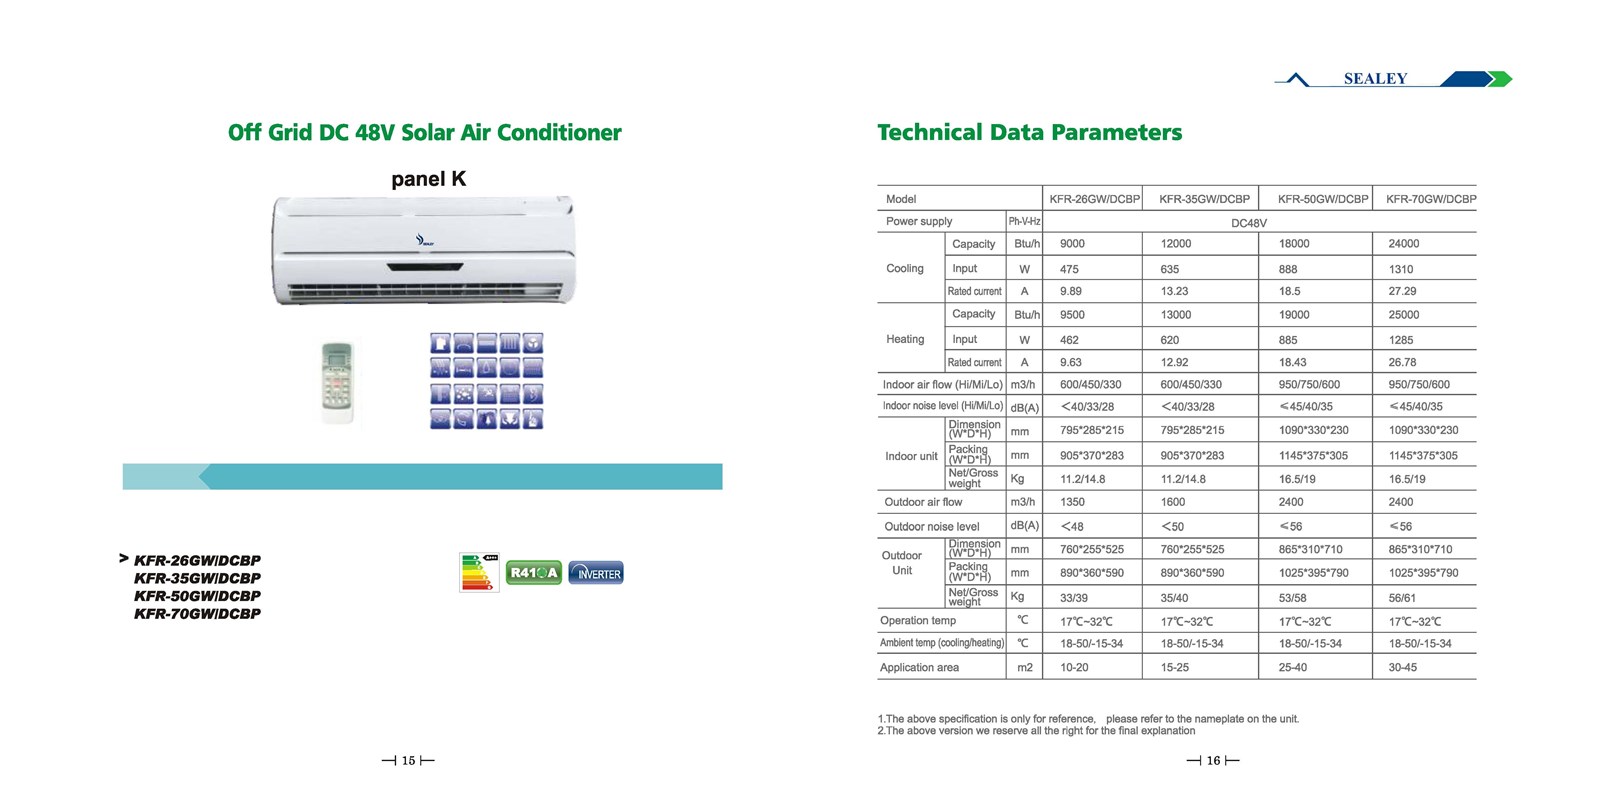 Offgrid DC 48V Solar Air Conditioner